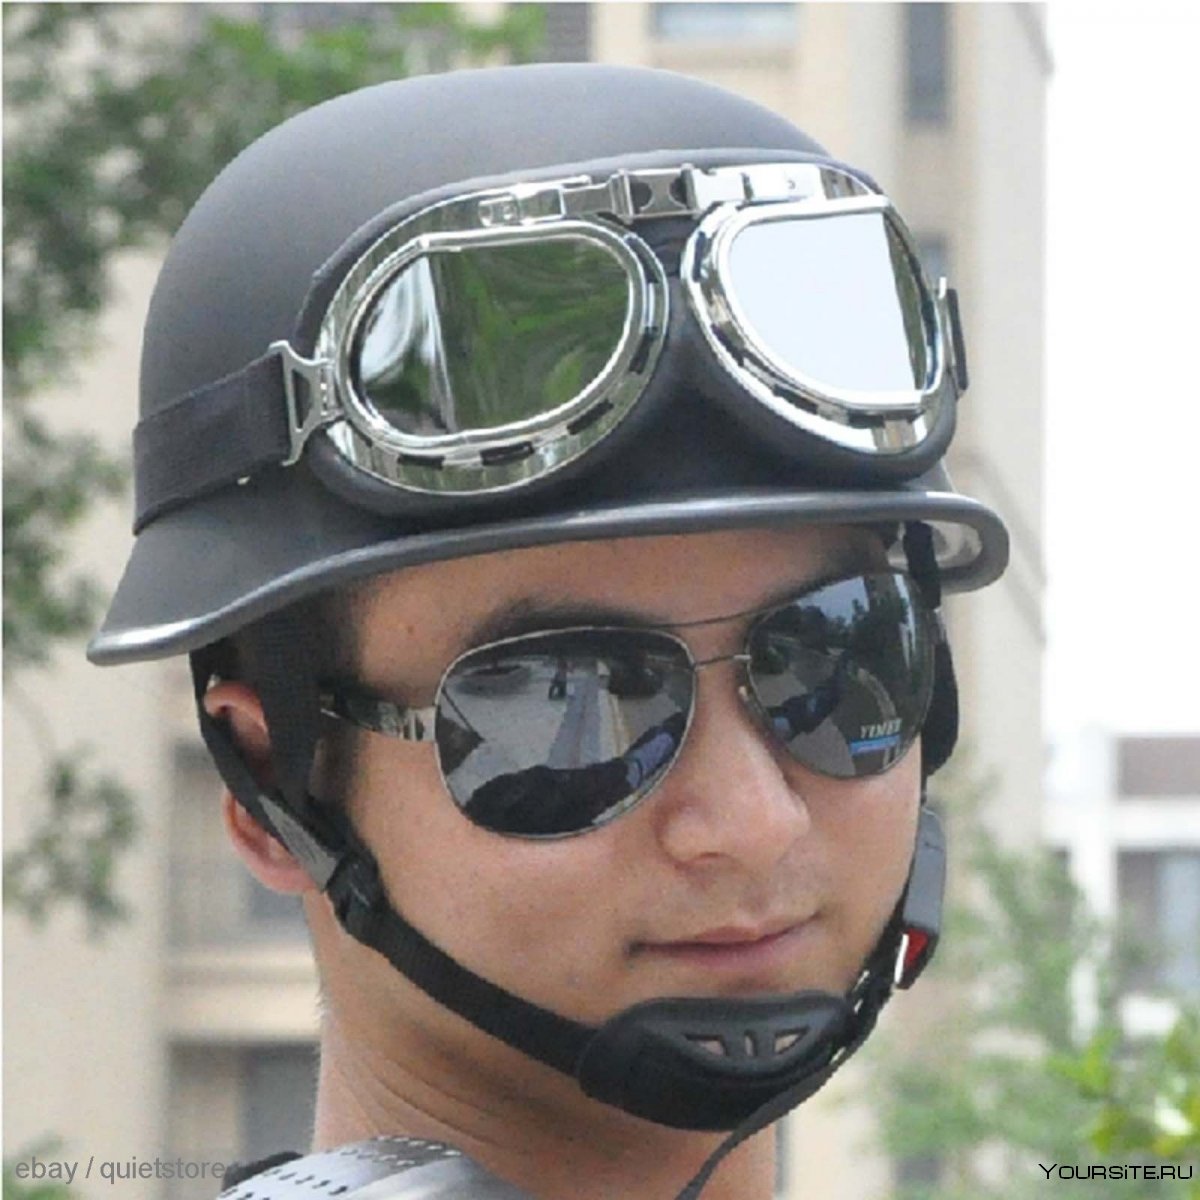 Мотоциклетный шлем на голове